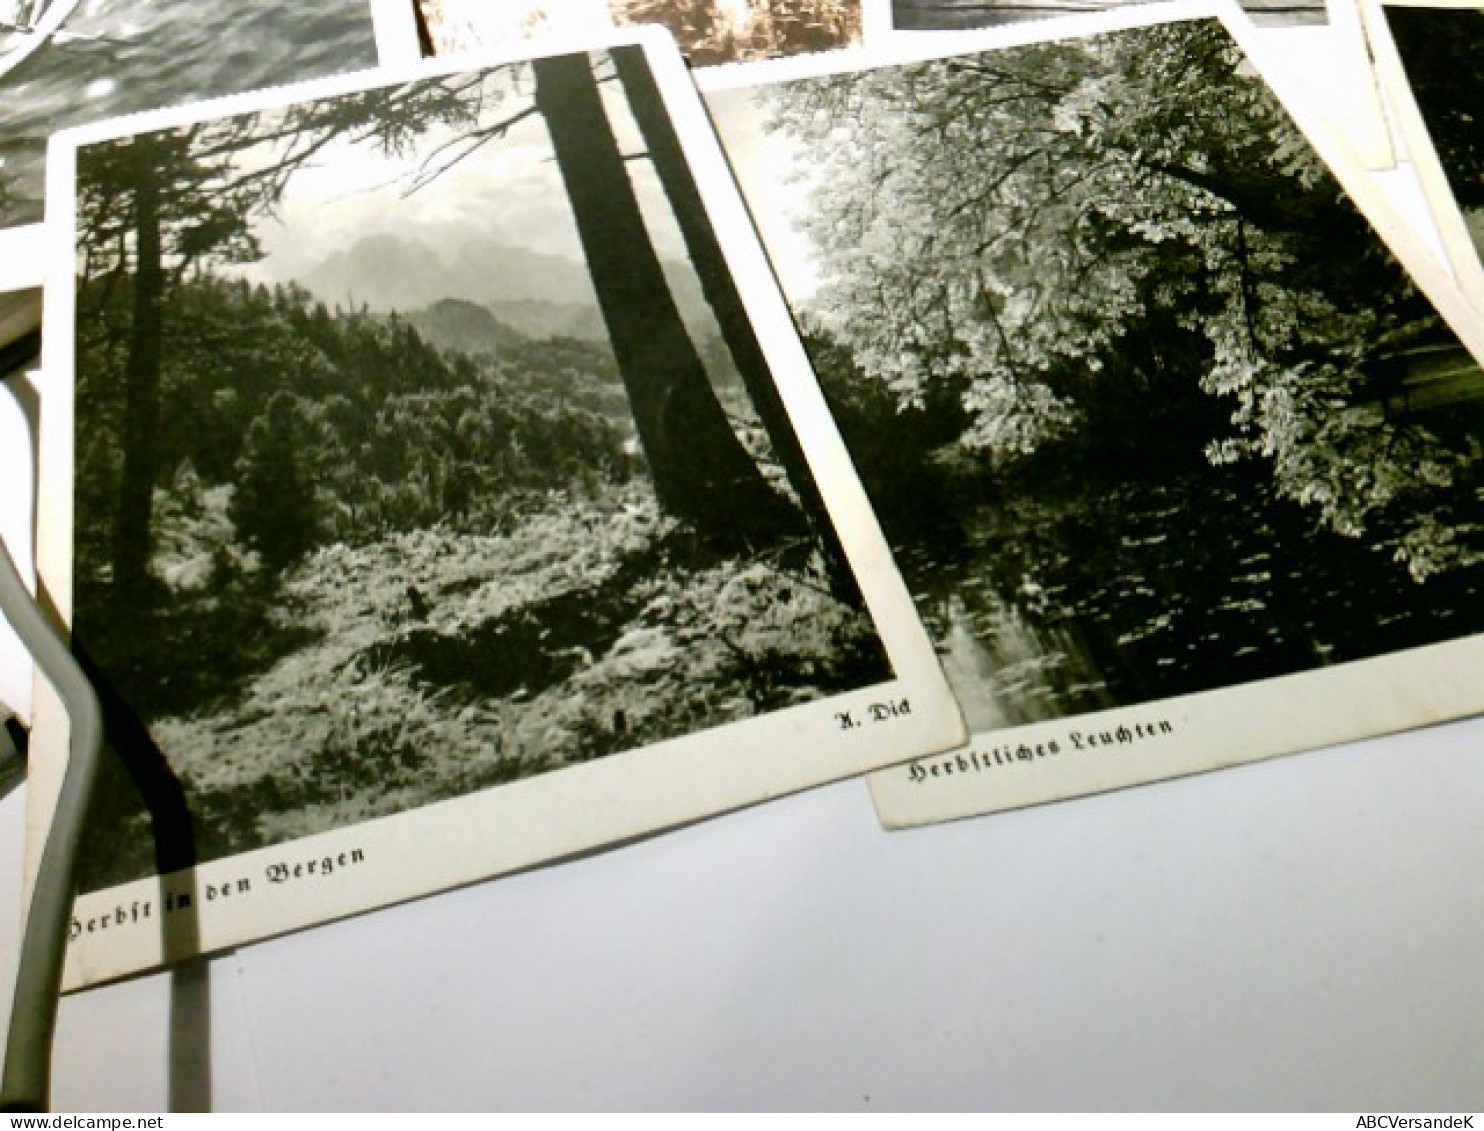 Landschaften. Konvolut. 11 x Alte Ansichtskarte / Postkarte s/w, ungel. u. 1 x gel. 1942. 1 x beschrieben, all